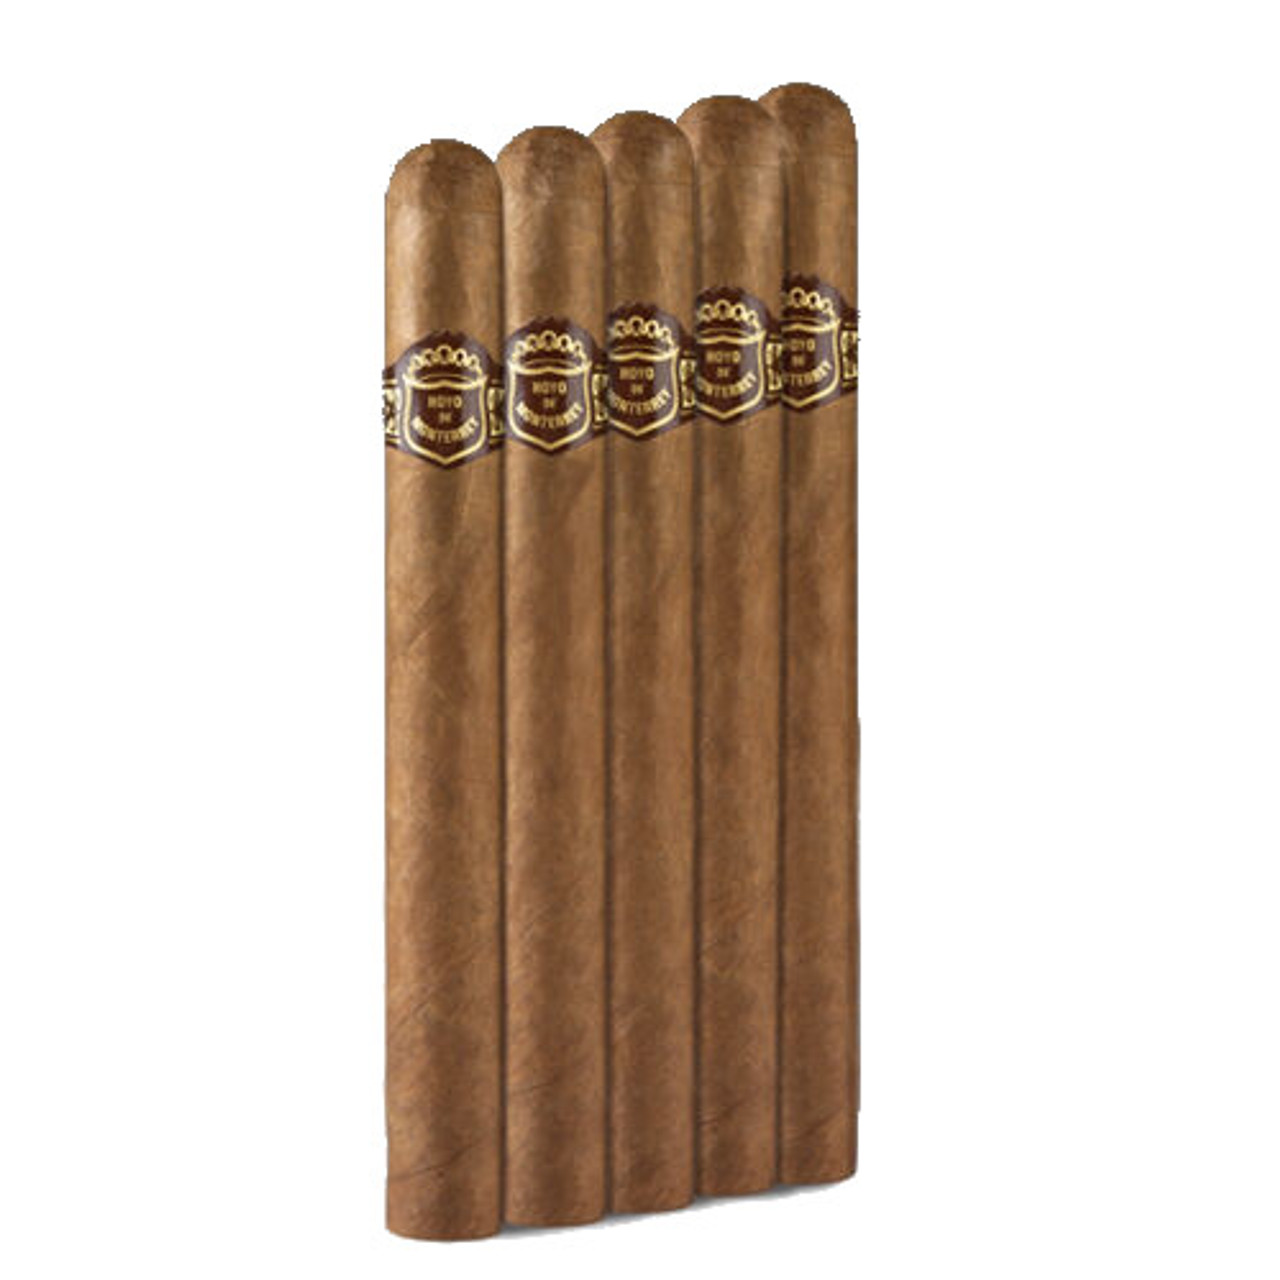 Hoyo de Monterrey Executives Cigars - 7 x 54 (Pack of 5) *Box